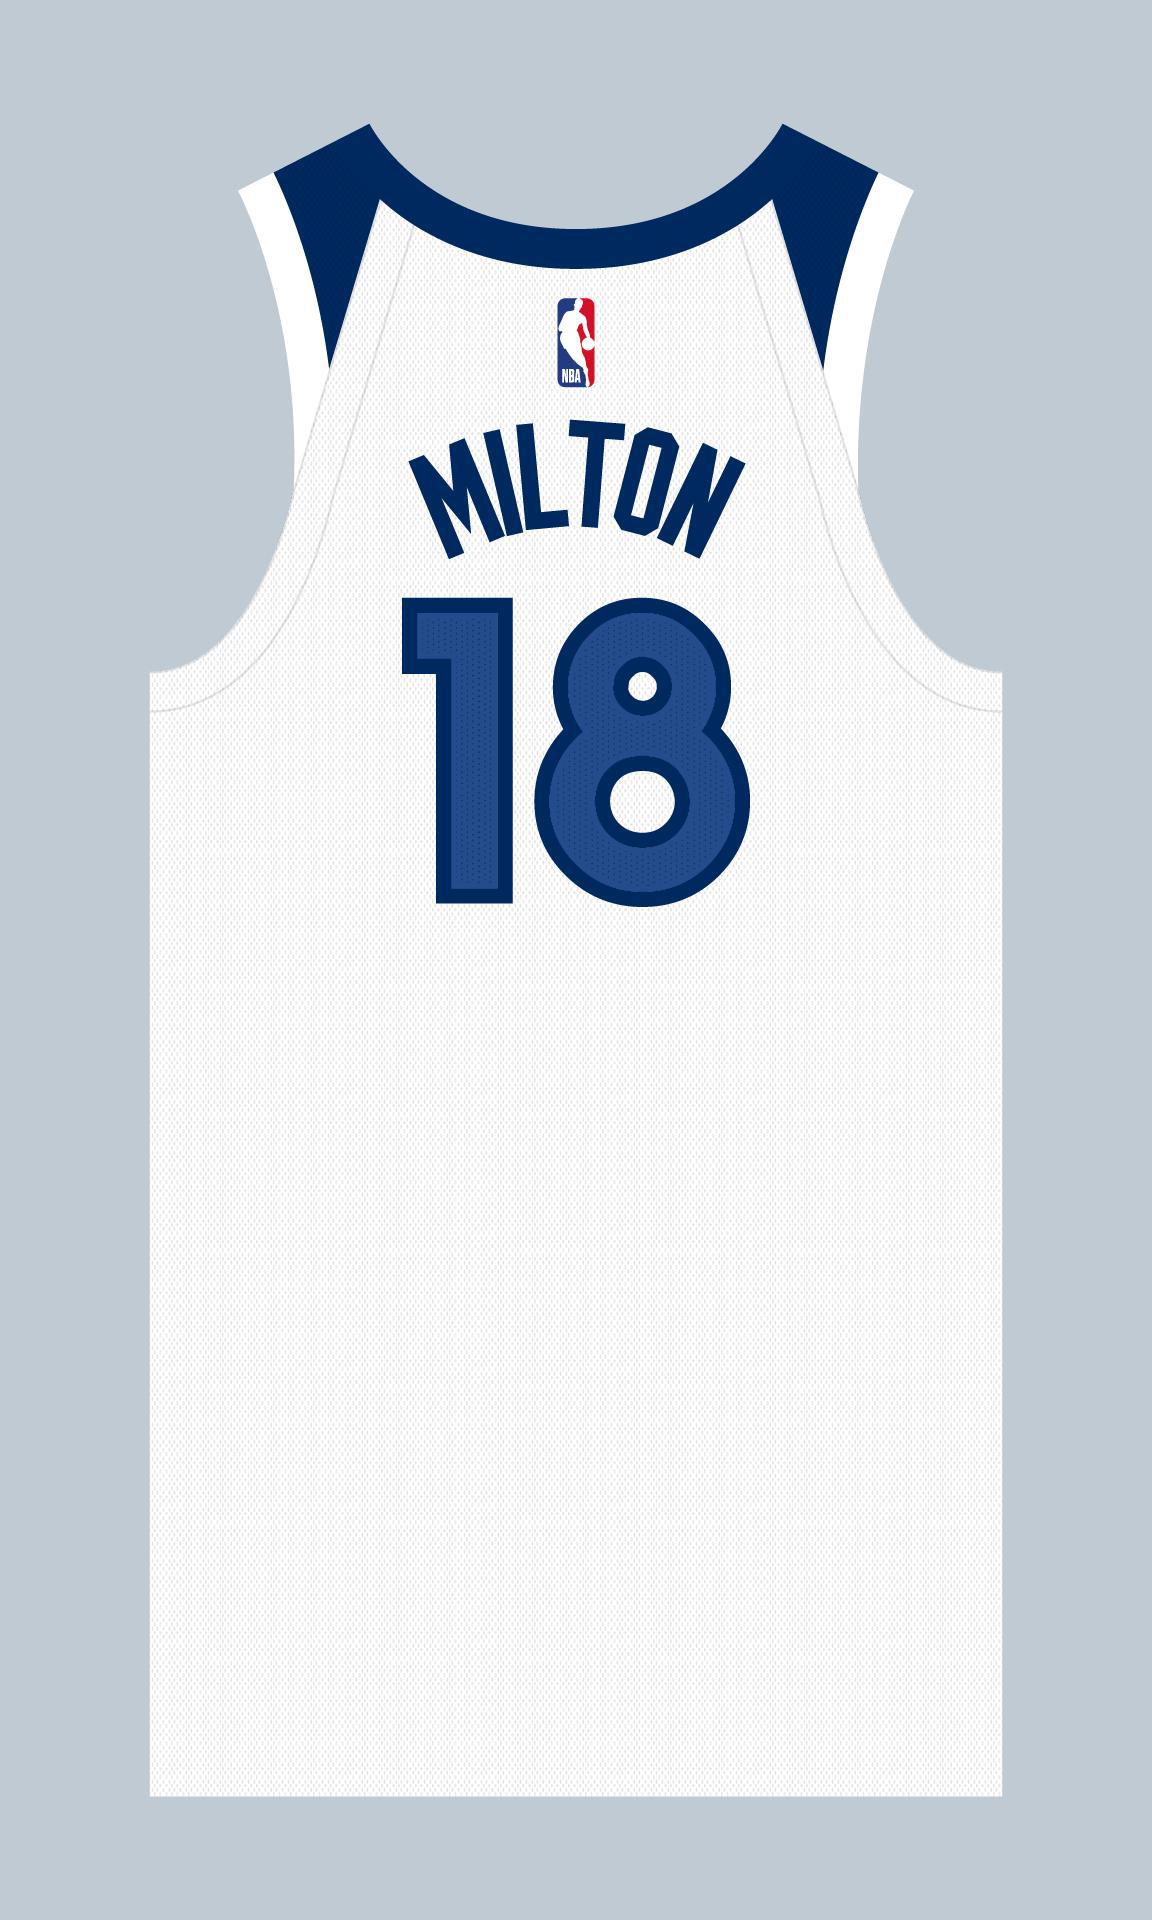 上赛季效力于76人的谢克·米尔顿选择了森林狼的18号球衣；
上赛季效力于湖人的特(1)